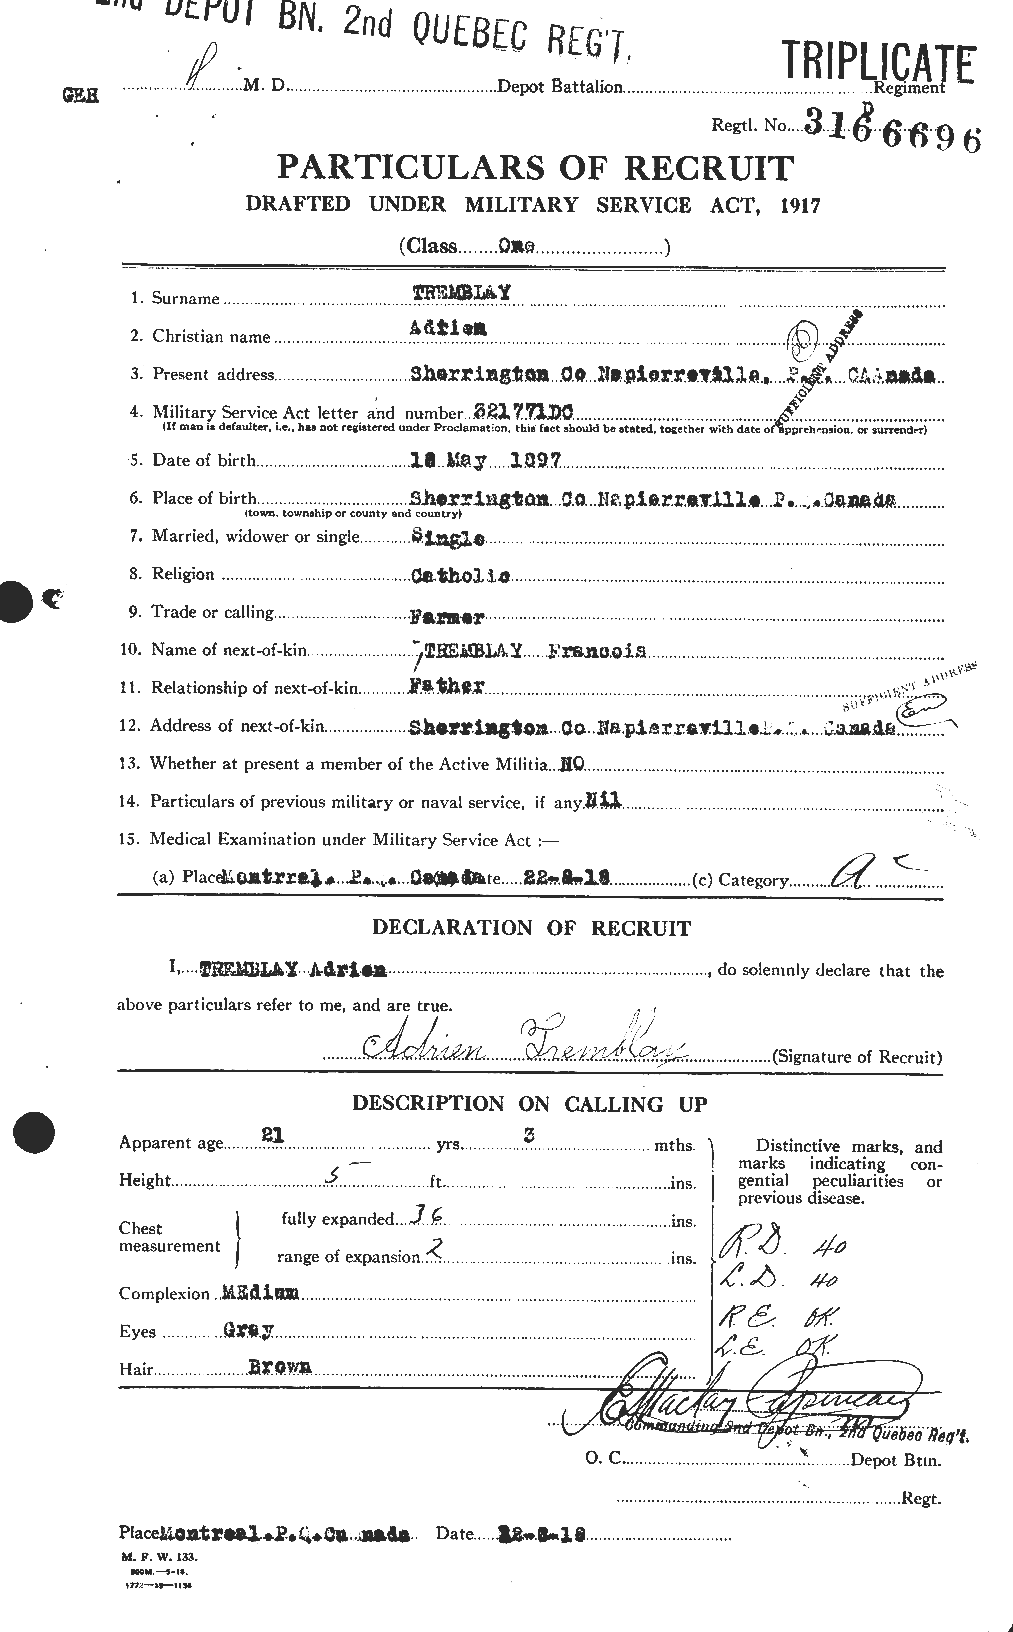 Dossiers du Personnel de la Première Guerre mondiale - CEC 637564a